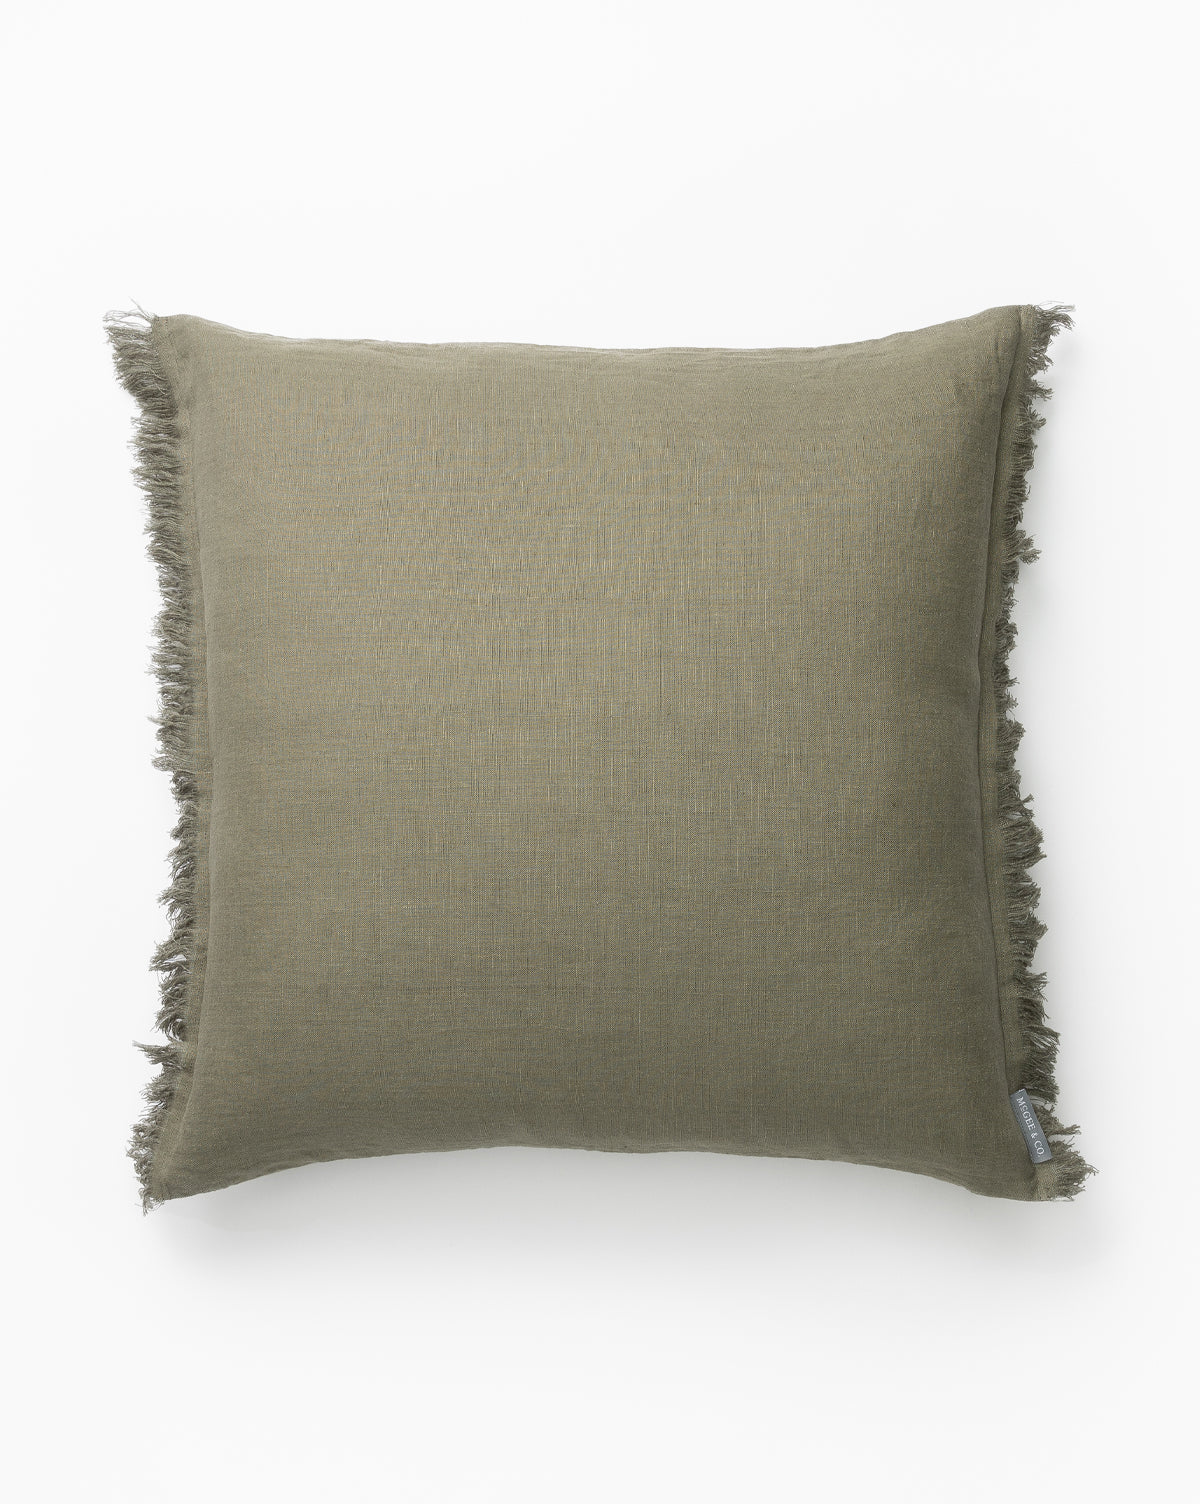 Renuka Inc., Hazelton Pine Fringed Pillow Cover